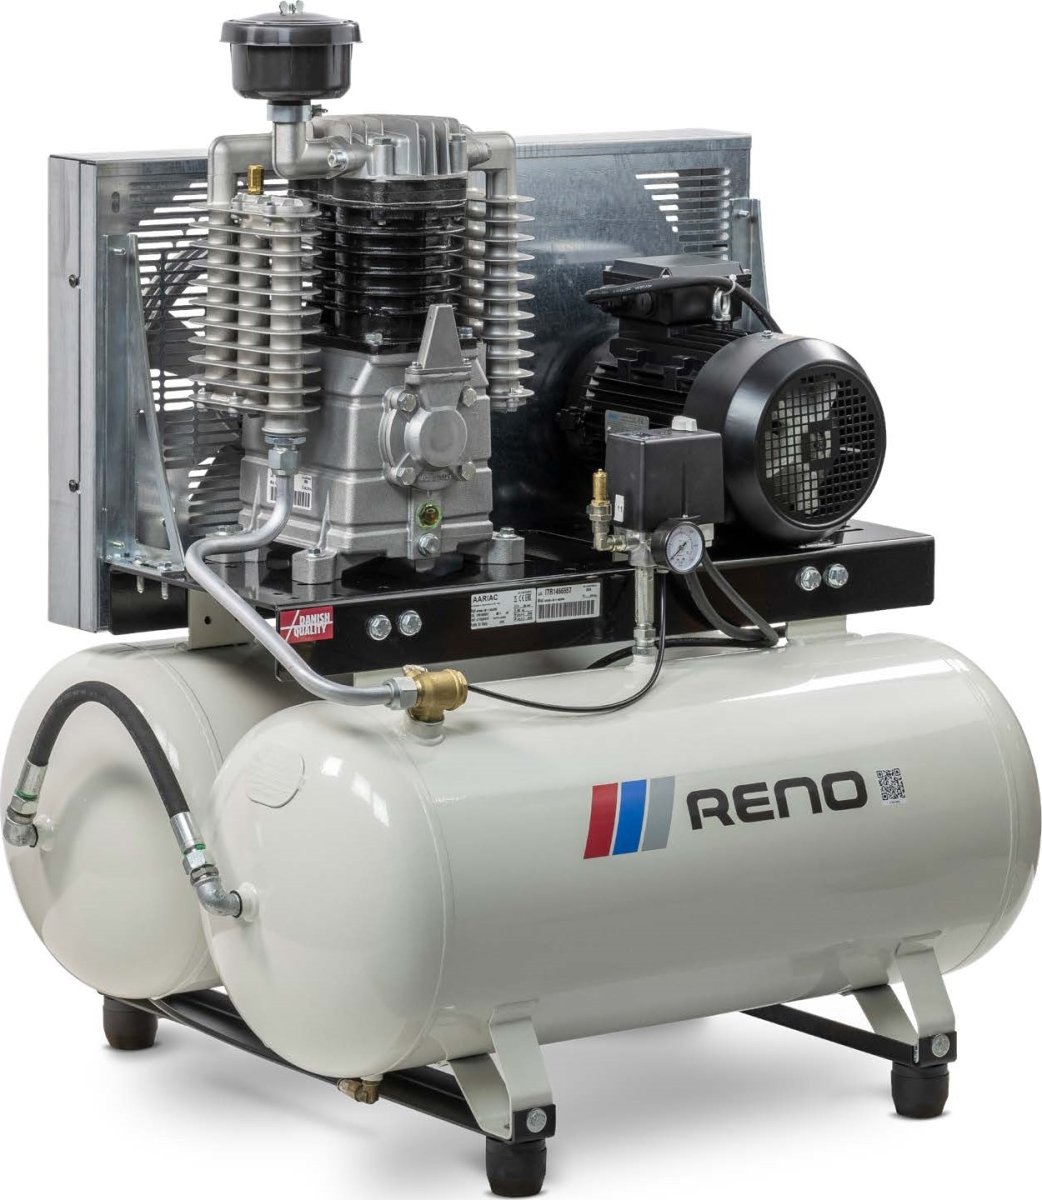 Reno kompressor, 90+90 l beholder